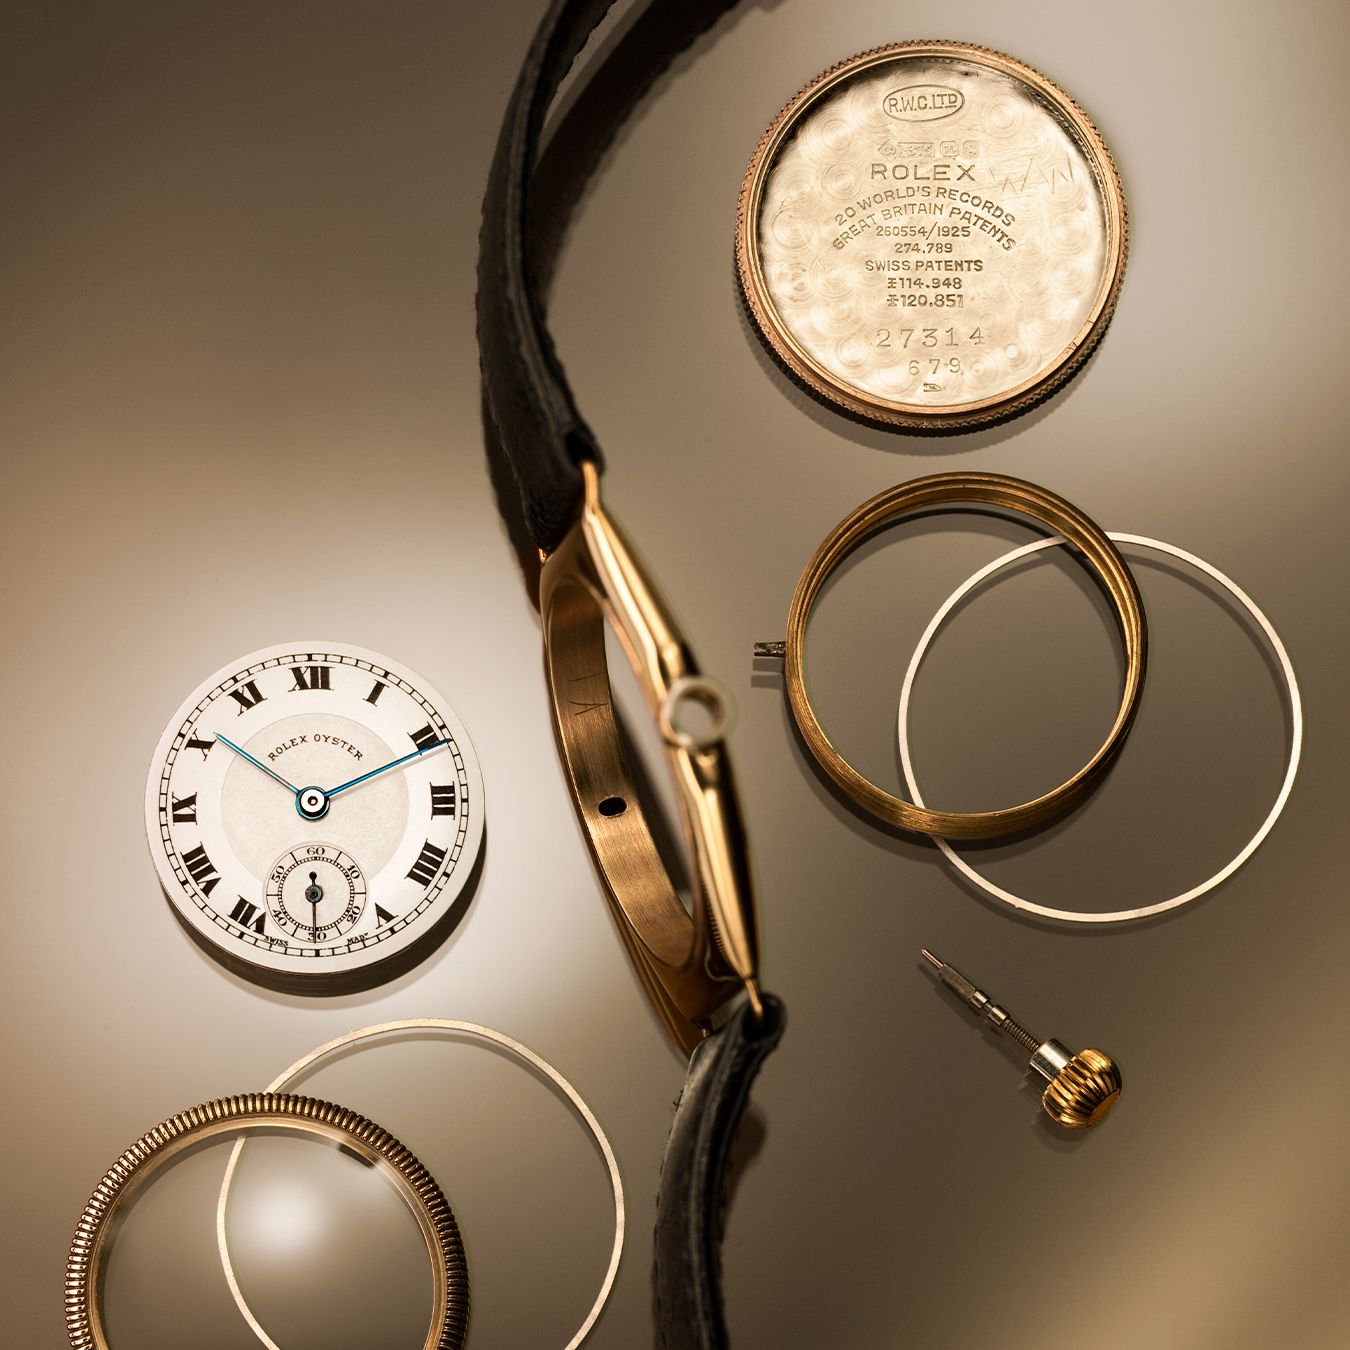 Die erste wasserdichte Oyster - Pionier der modernen Armbanduhr